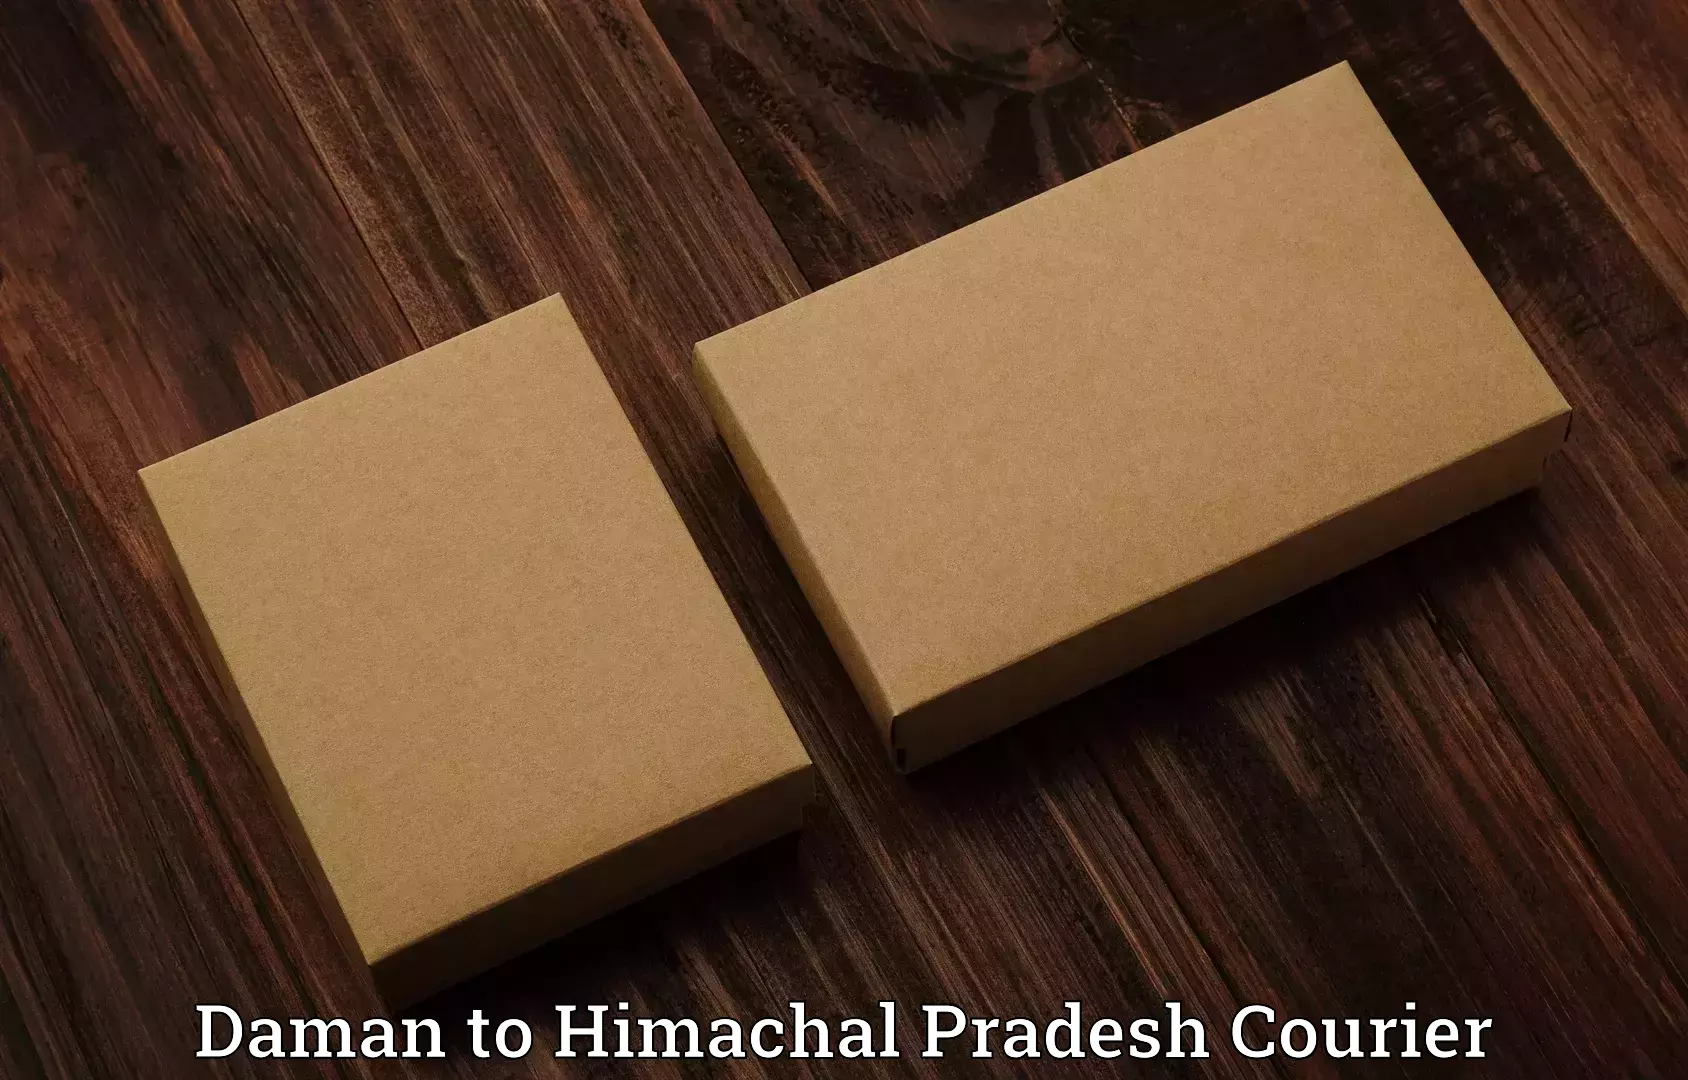 Baggage delivery technology Daman to Una Himachal Pradesh